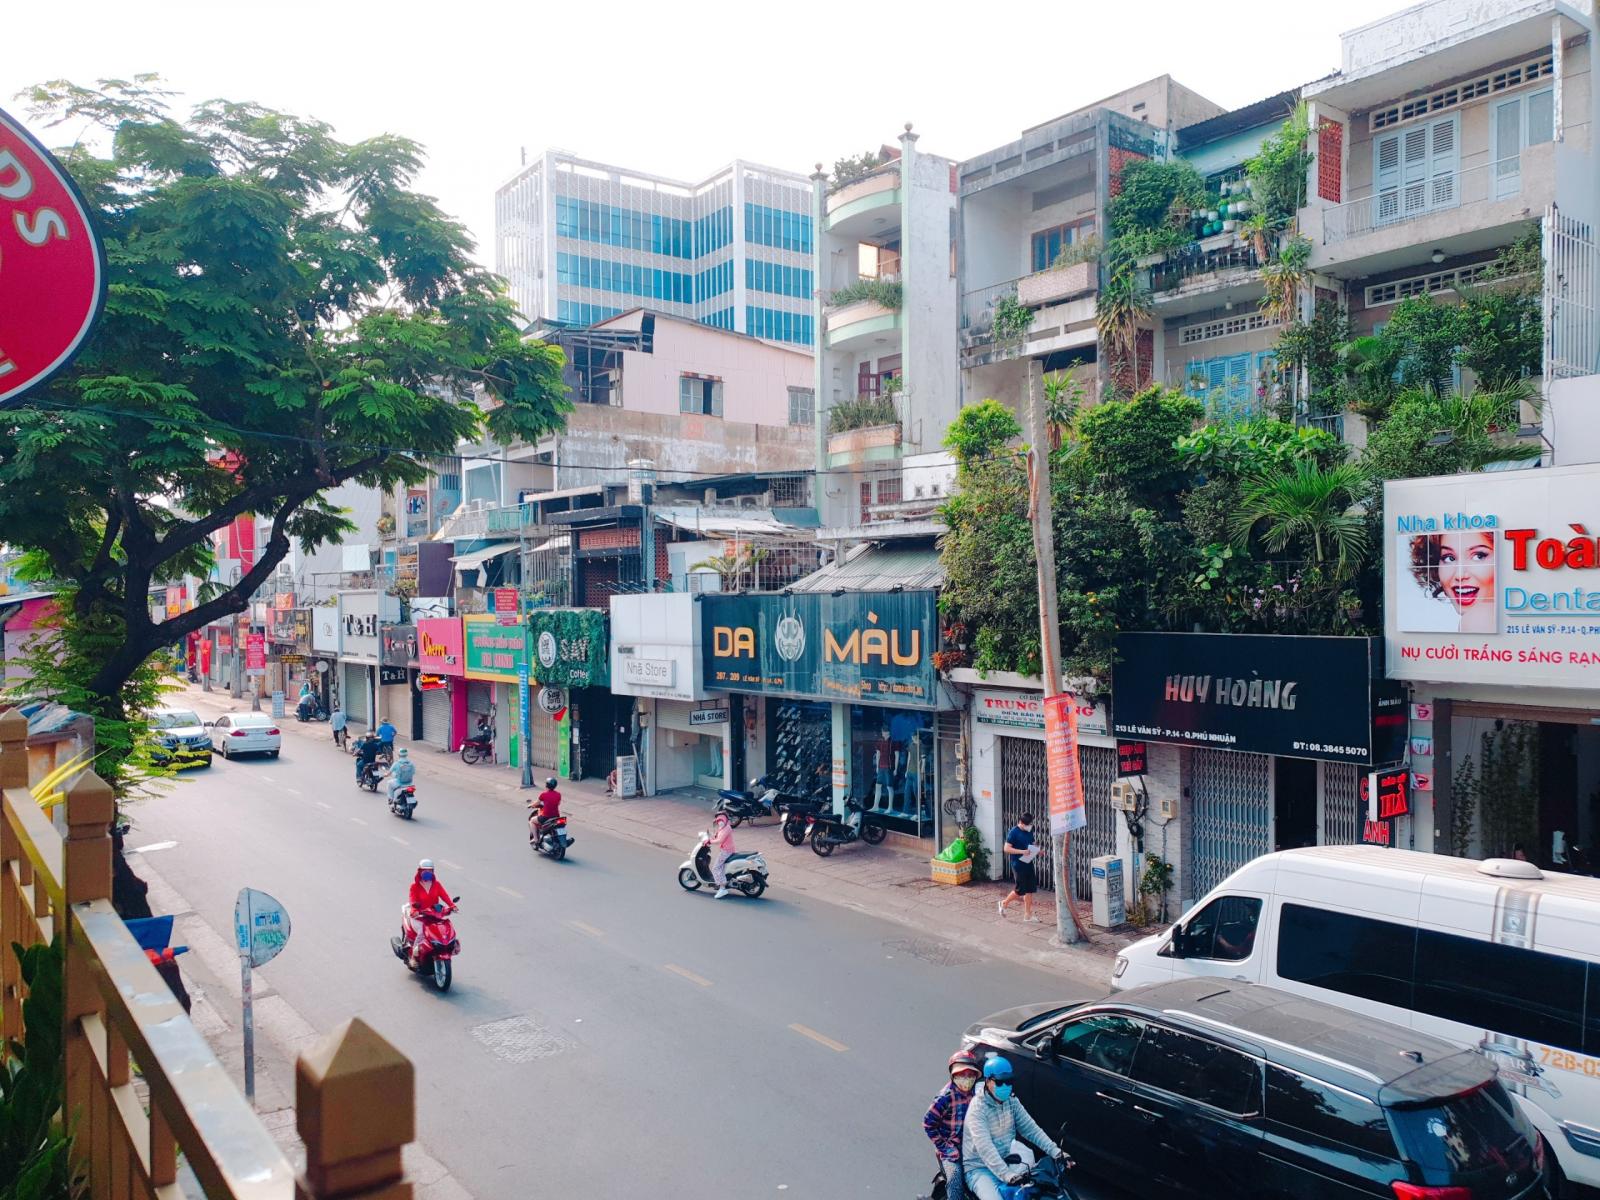 8 x 30m, bán nhà 1 lầu mặt tiền đường Nguyễn Minh Hoàng - p.12 - K.300, giá 55 tỷ